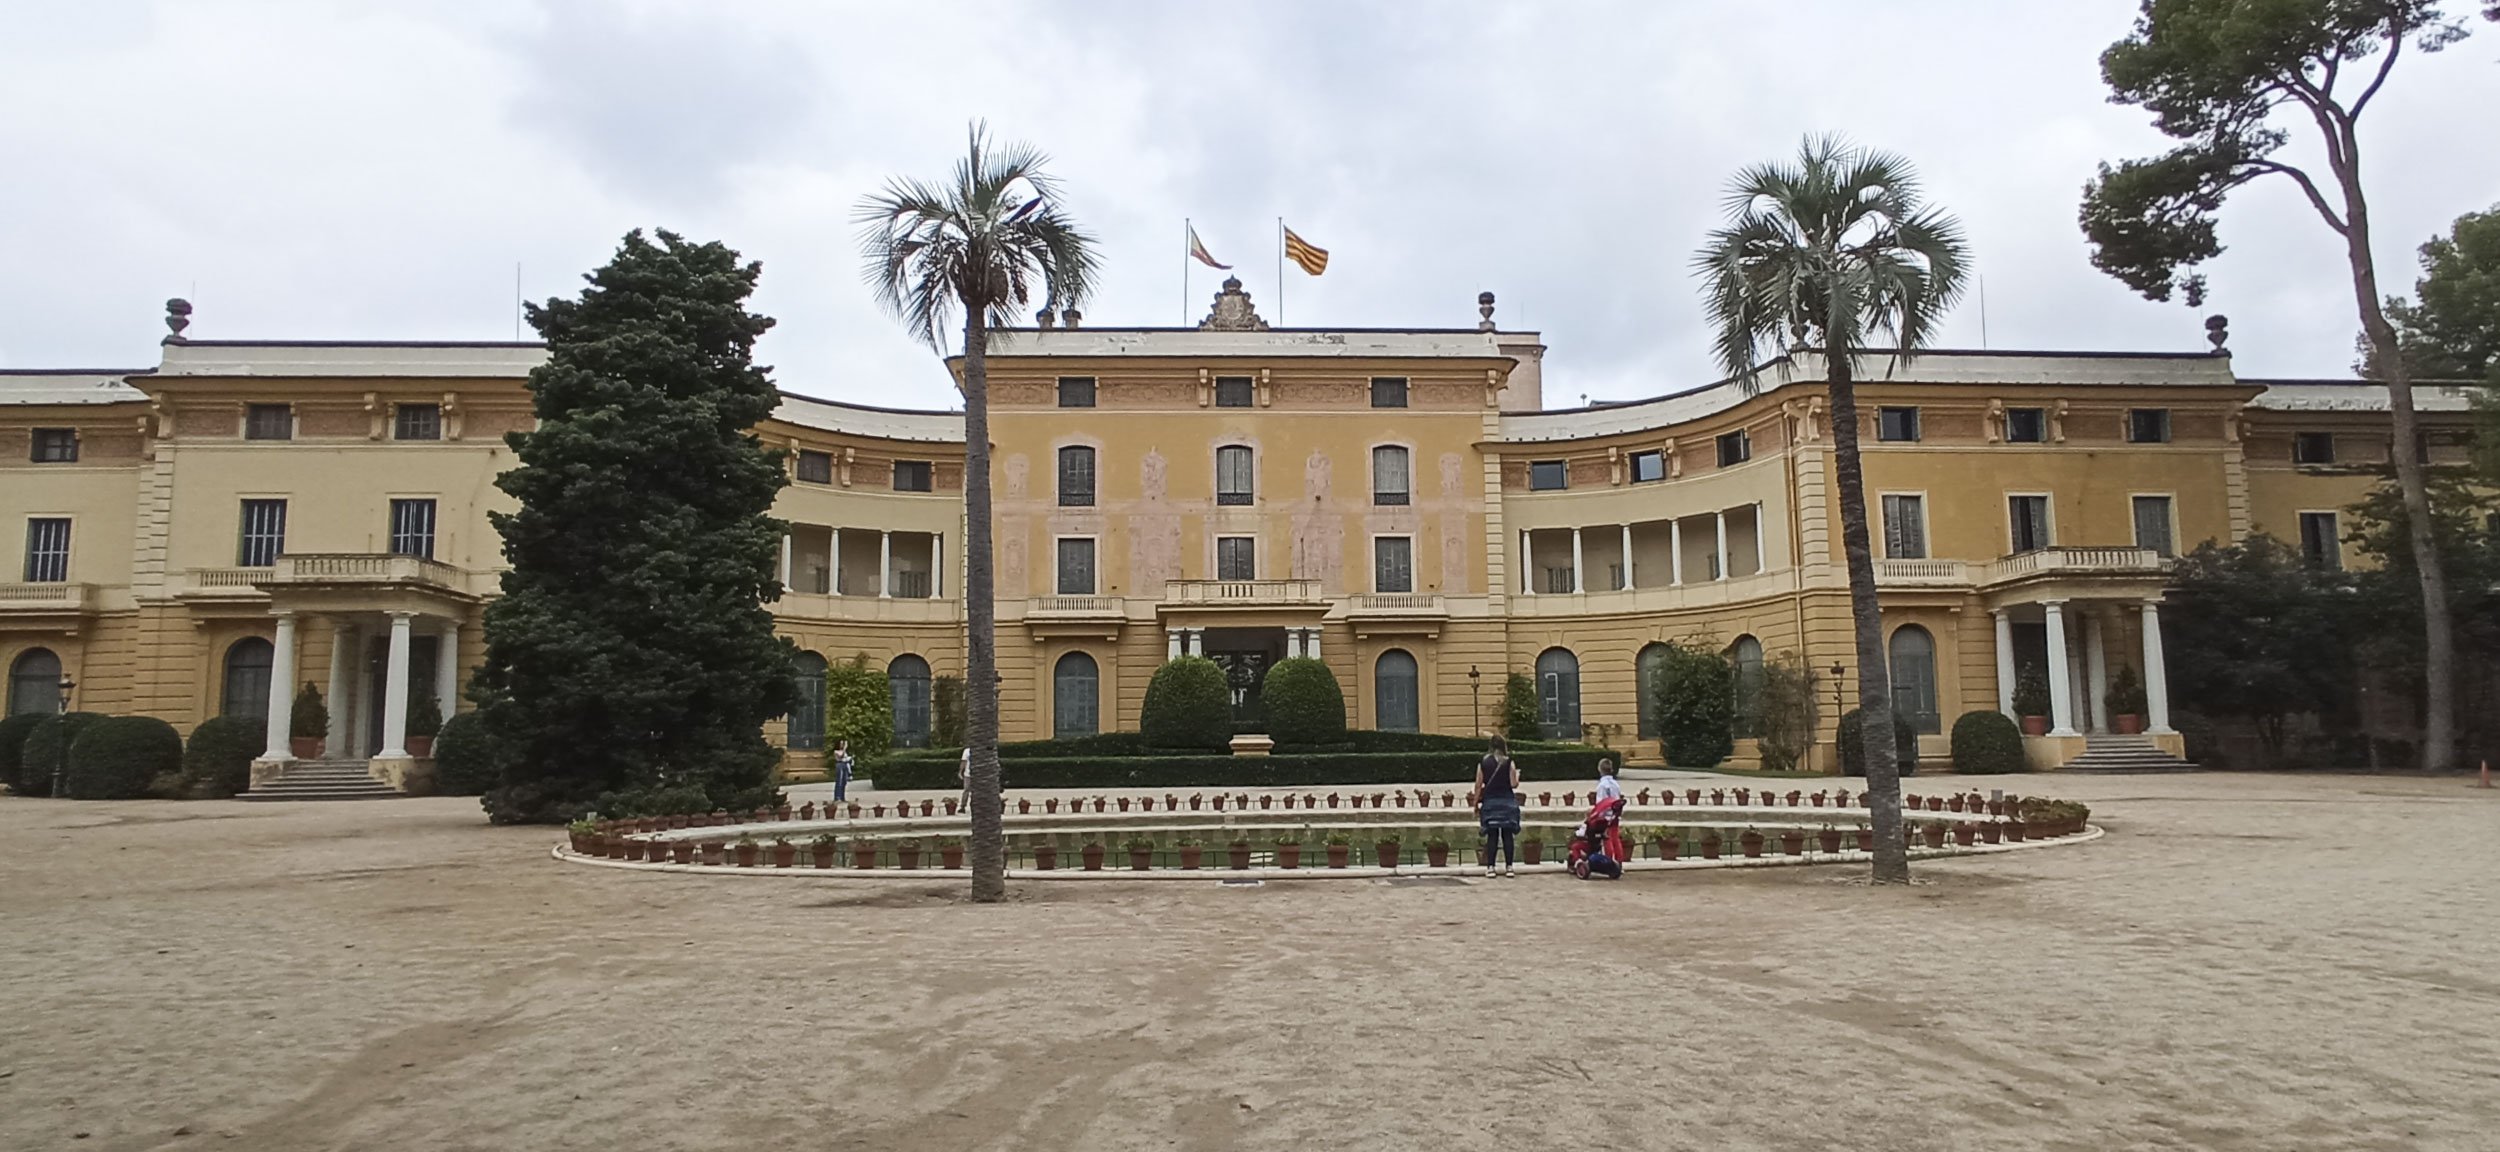 El Govern assumeix el Palau de Pedralbes i hi envia Fabró, l'ombra dels presidents